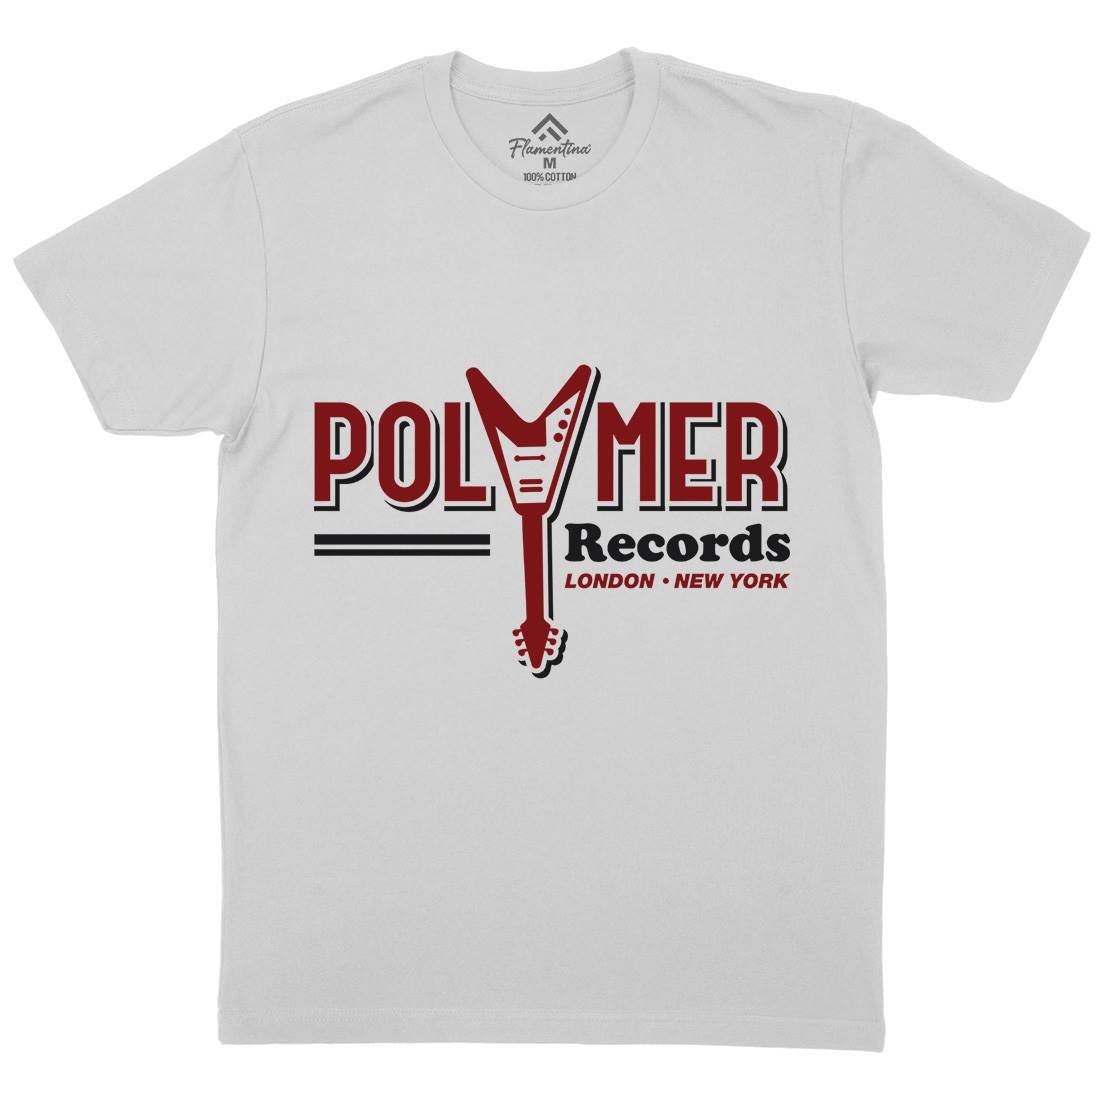 Polymer Mens Crew Neck T-Shirt Music D294